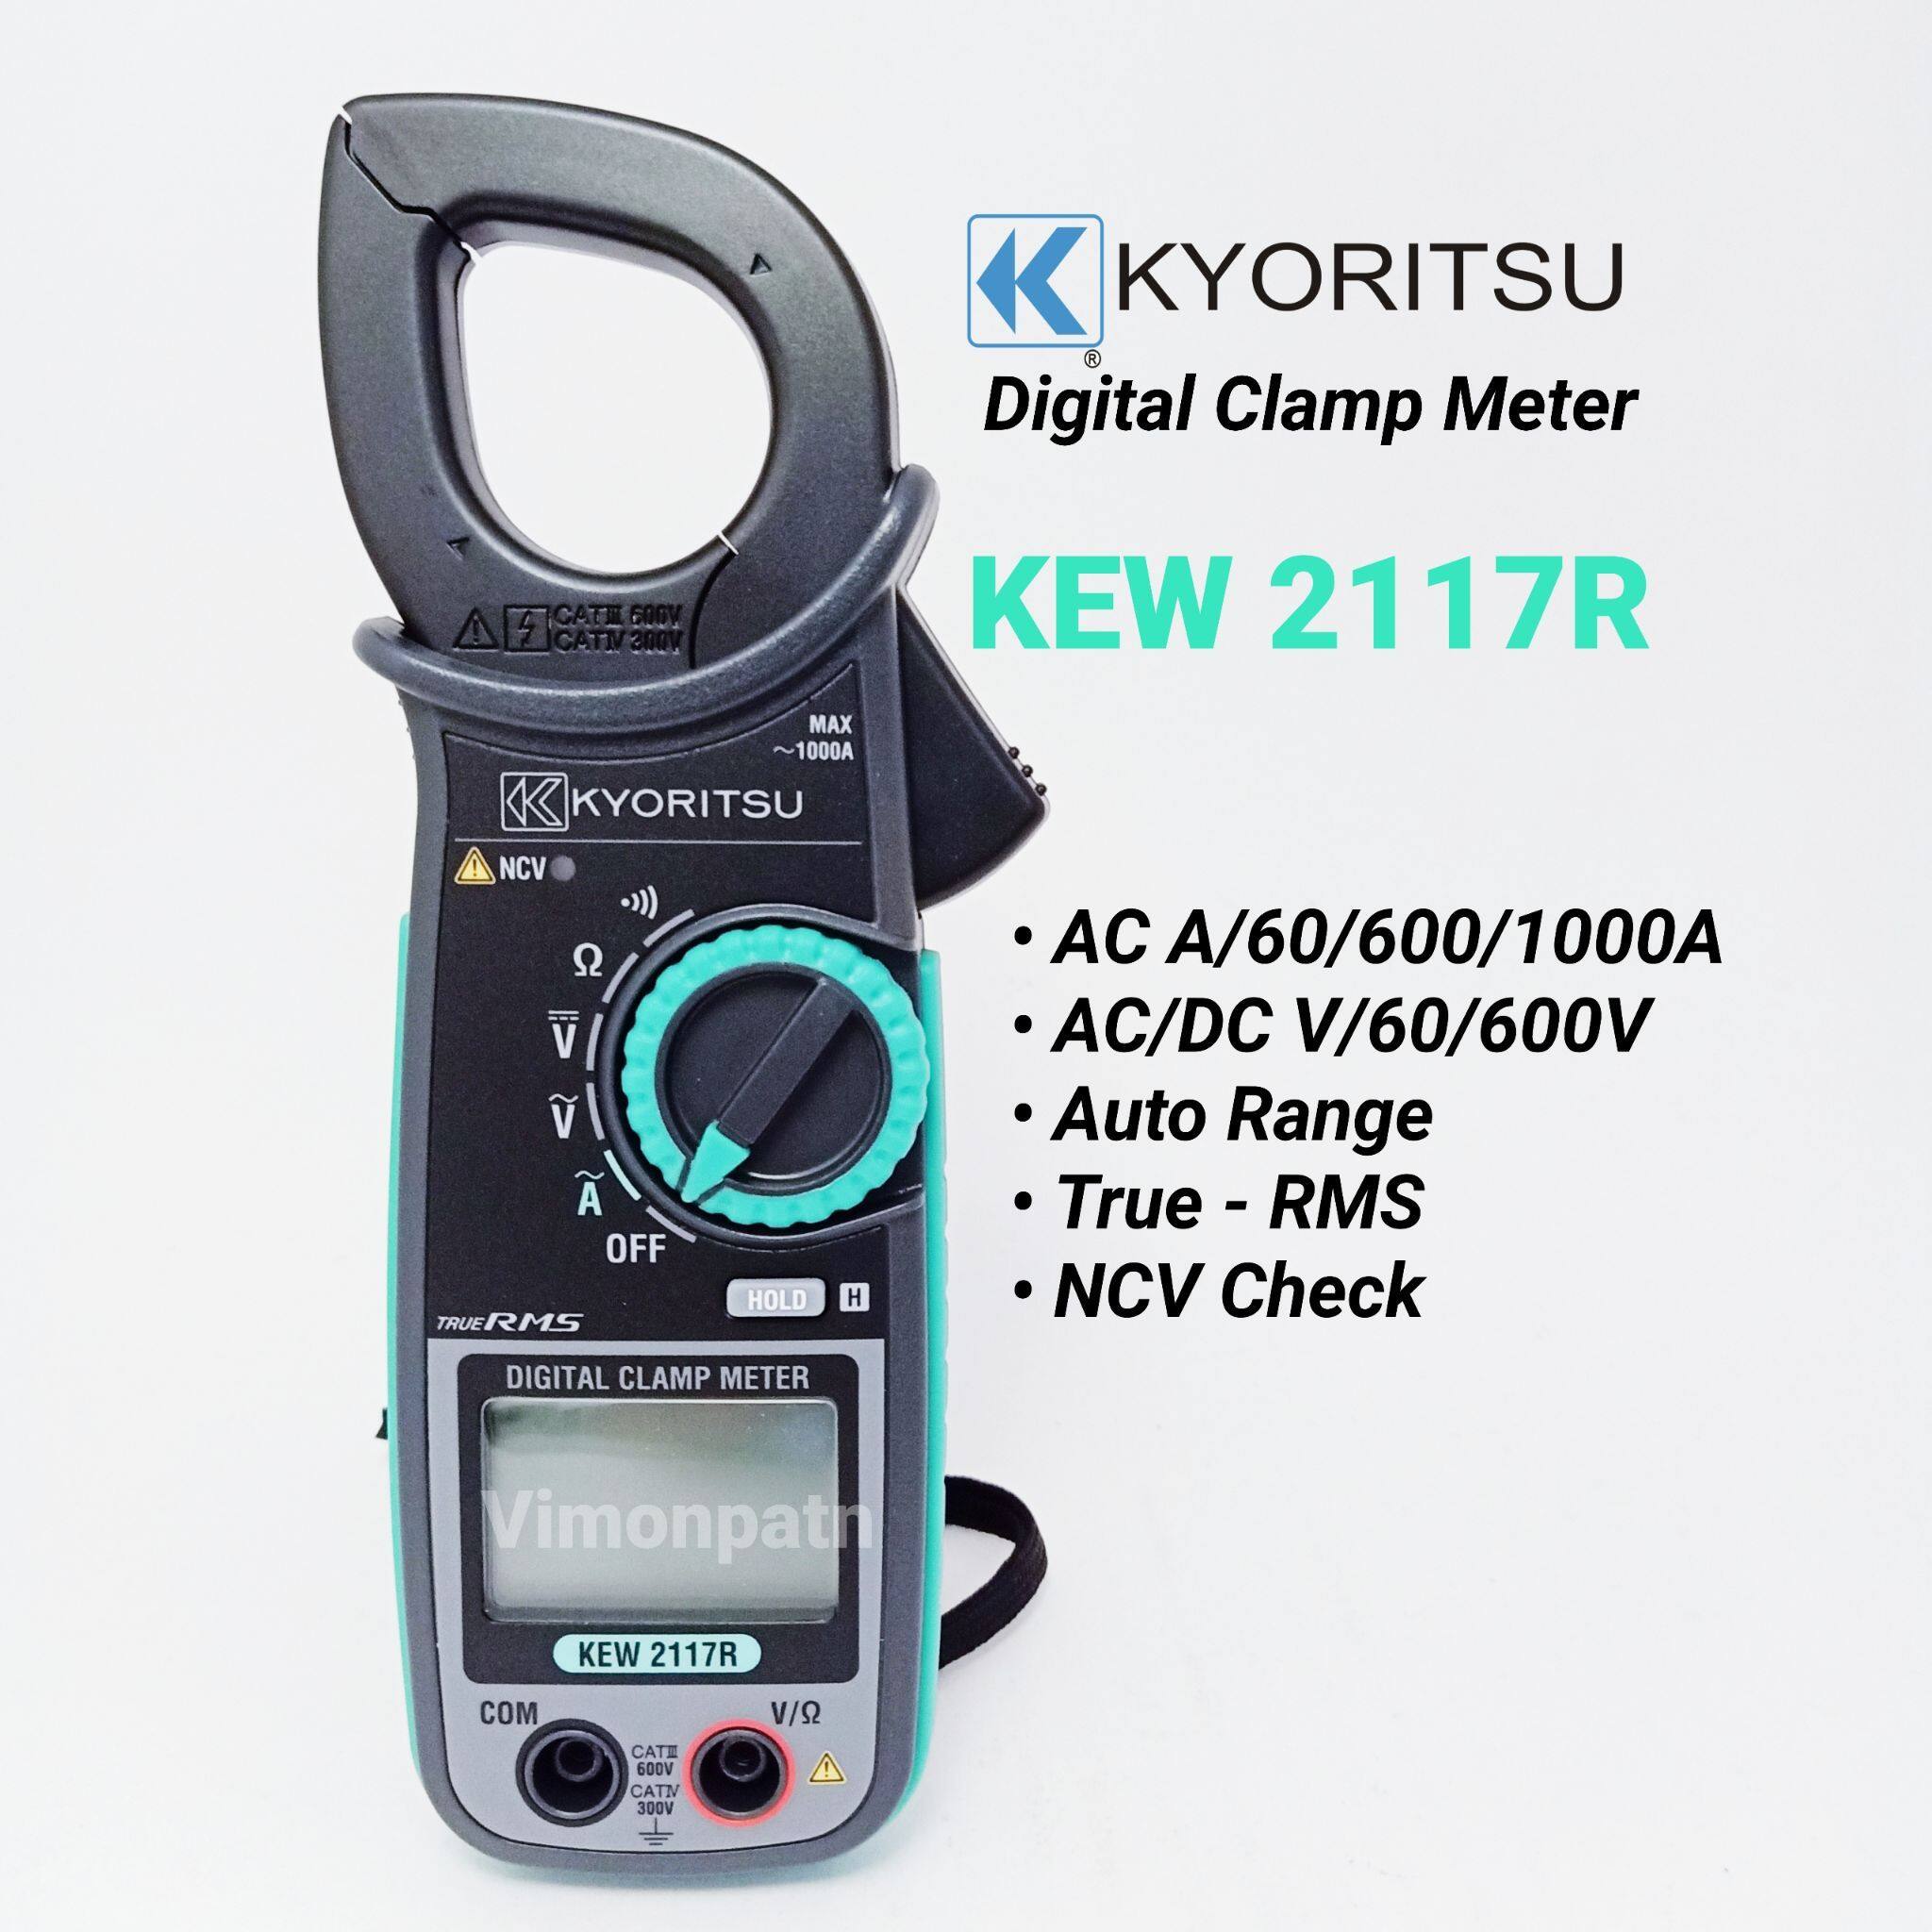 แคลมป์มิเตอร์ดิจิตอล แคลมป์มิเตอร์ คีบแอมป์วัดไฟ Digital Clamp Meter KYORITSU รุ่น KEW 2117R True-RMS (คู่มือภาษาไทย)